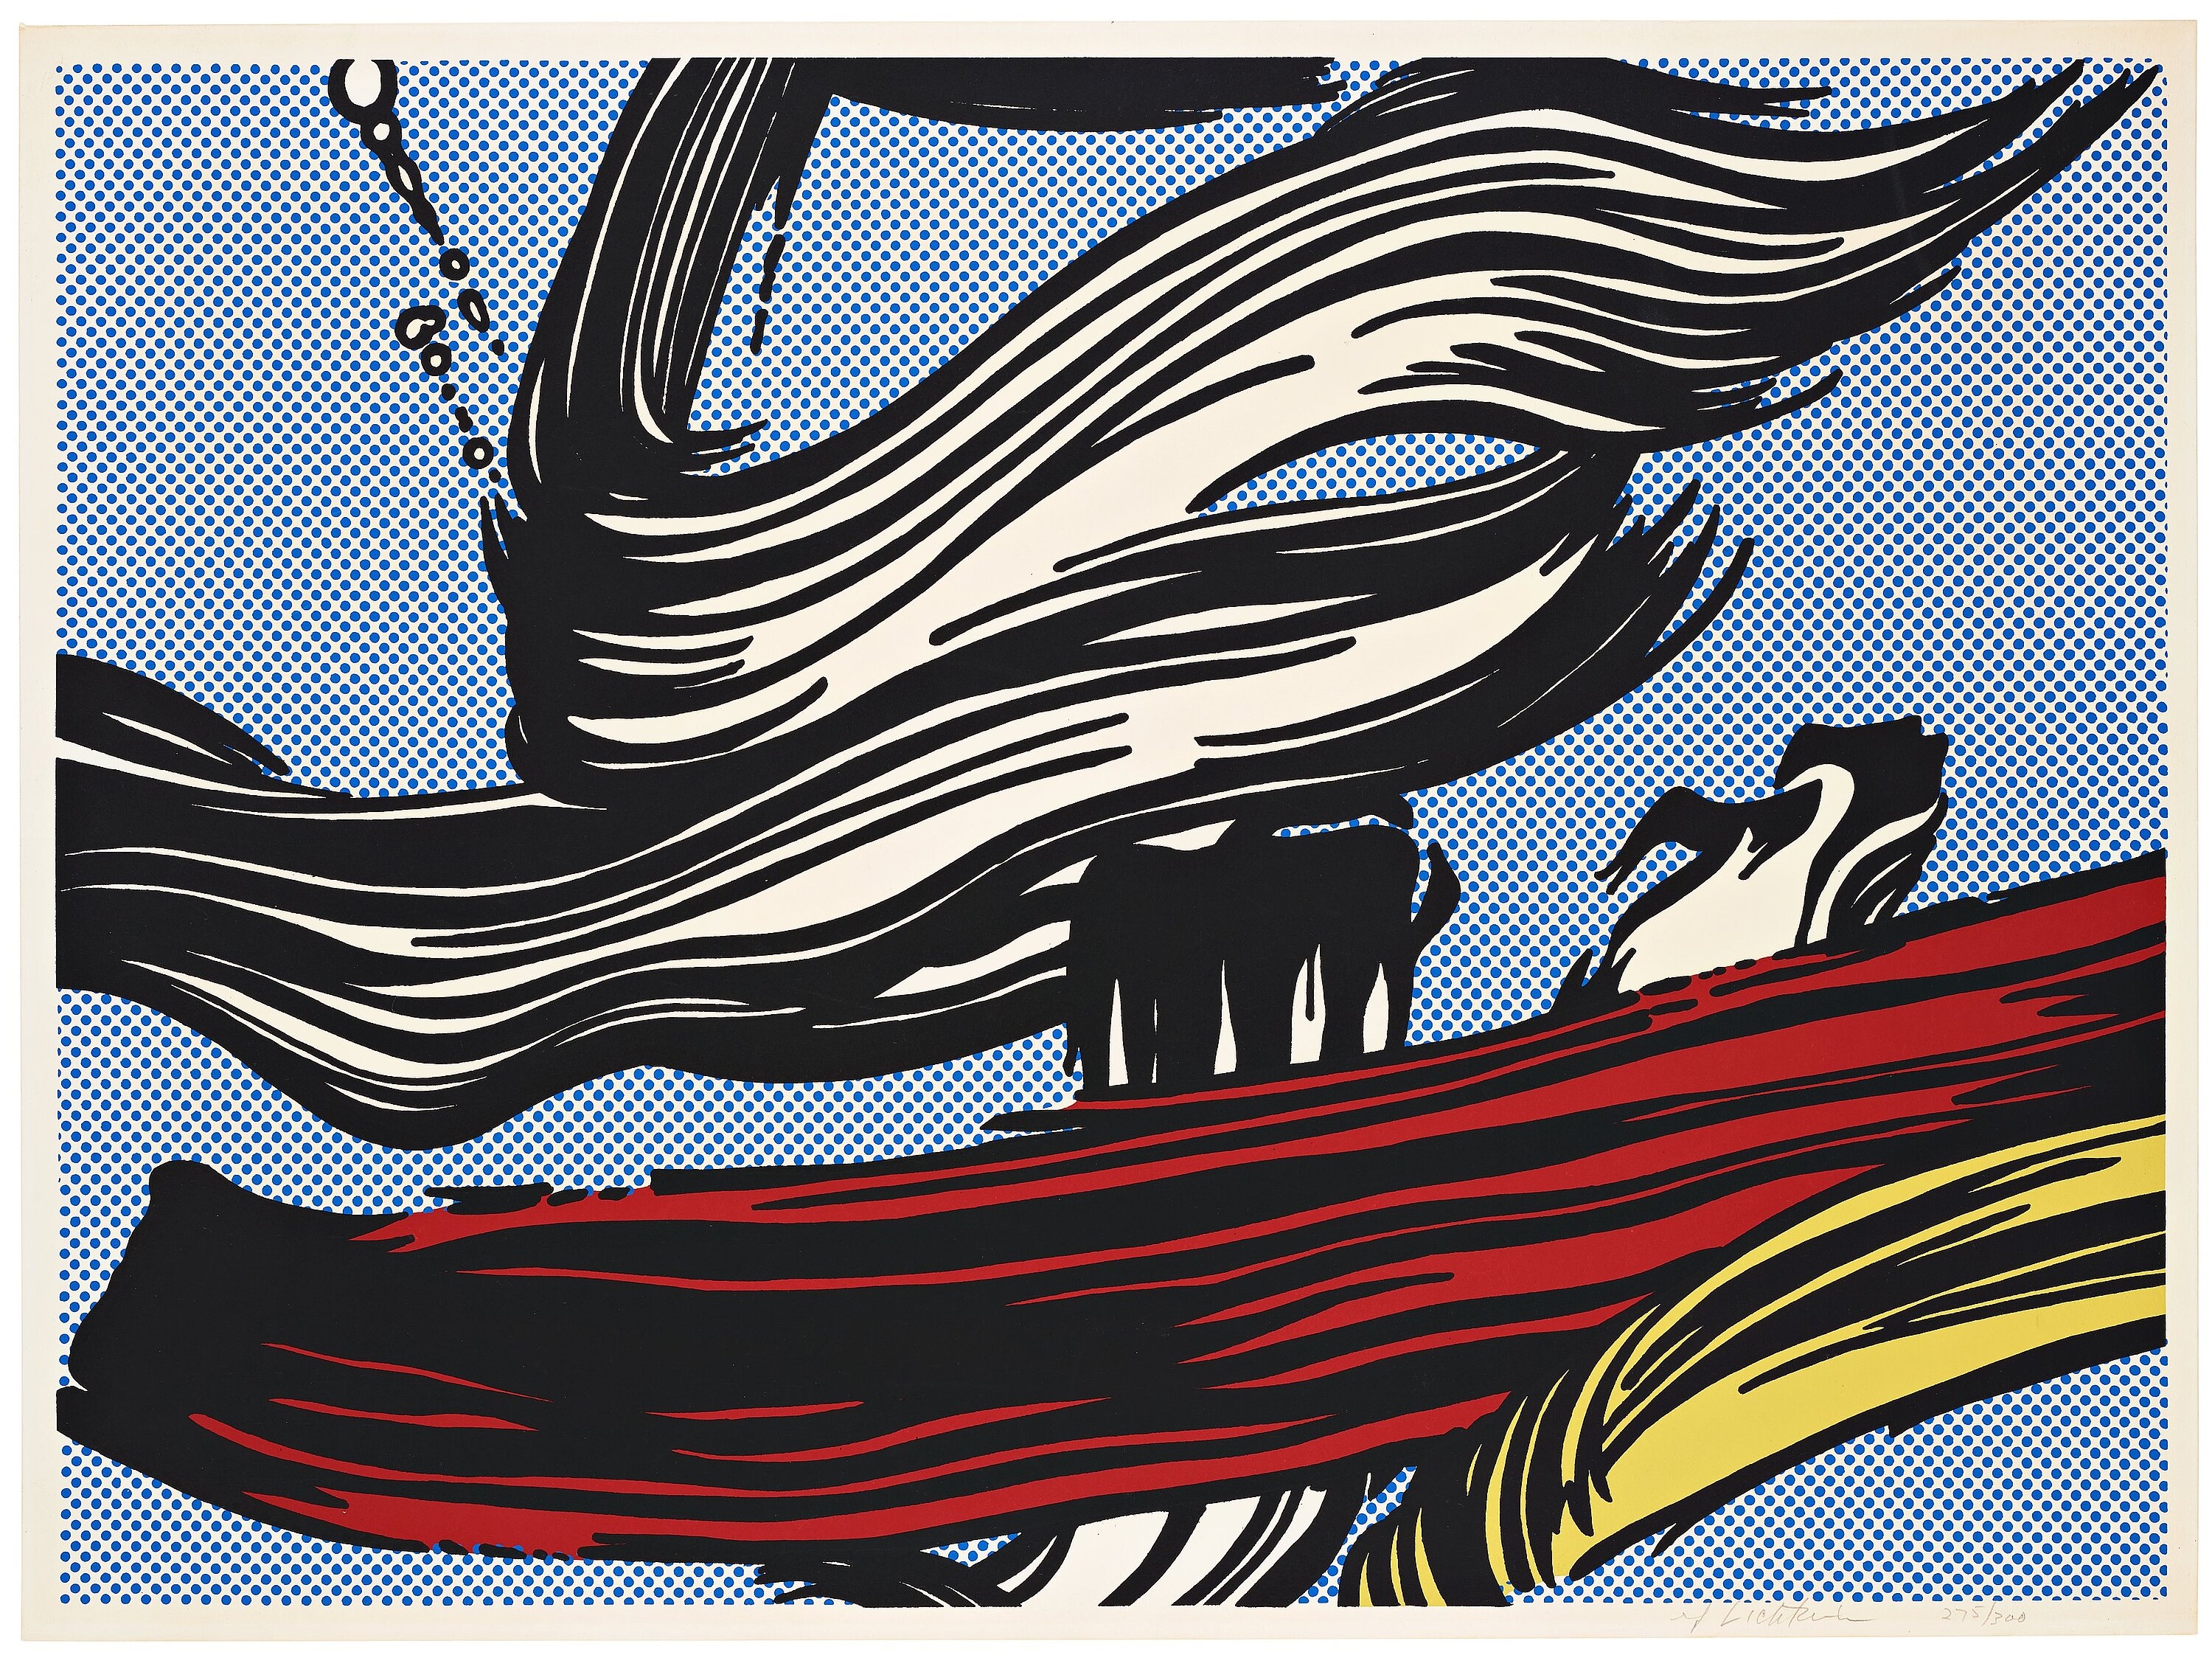 Brushstrokes by Roy Lichtenstein, 1967